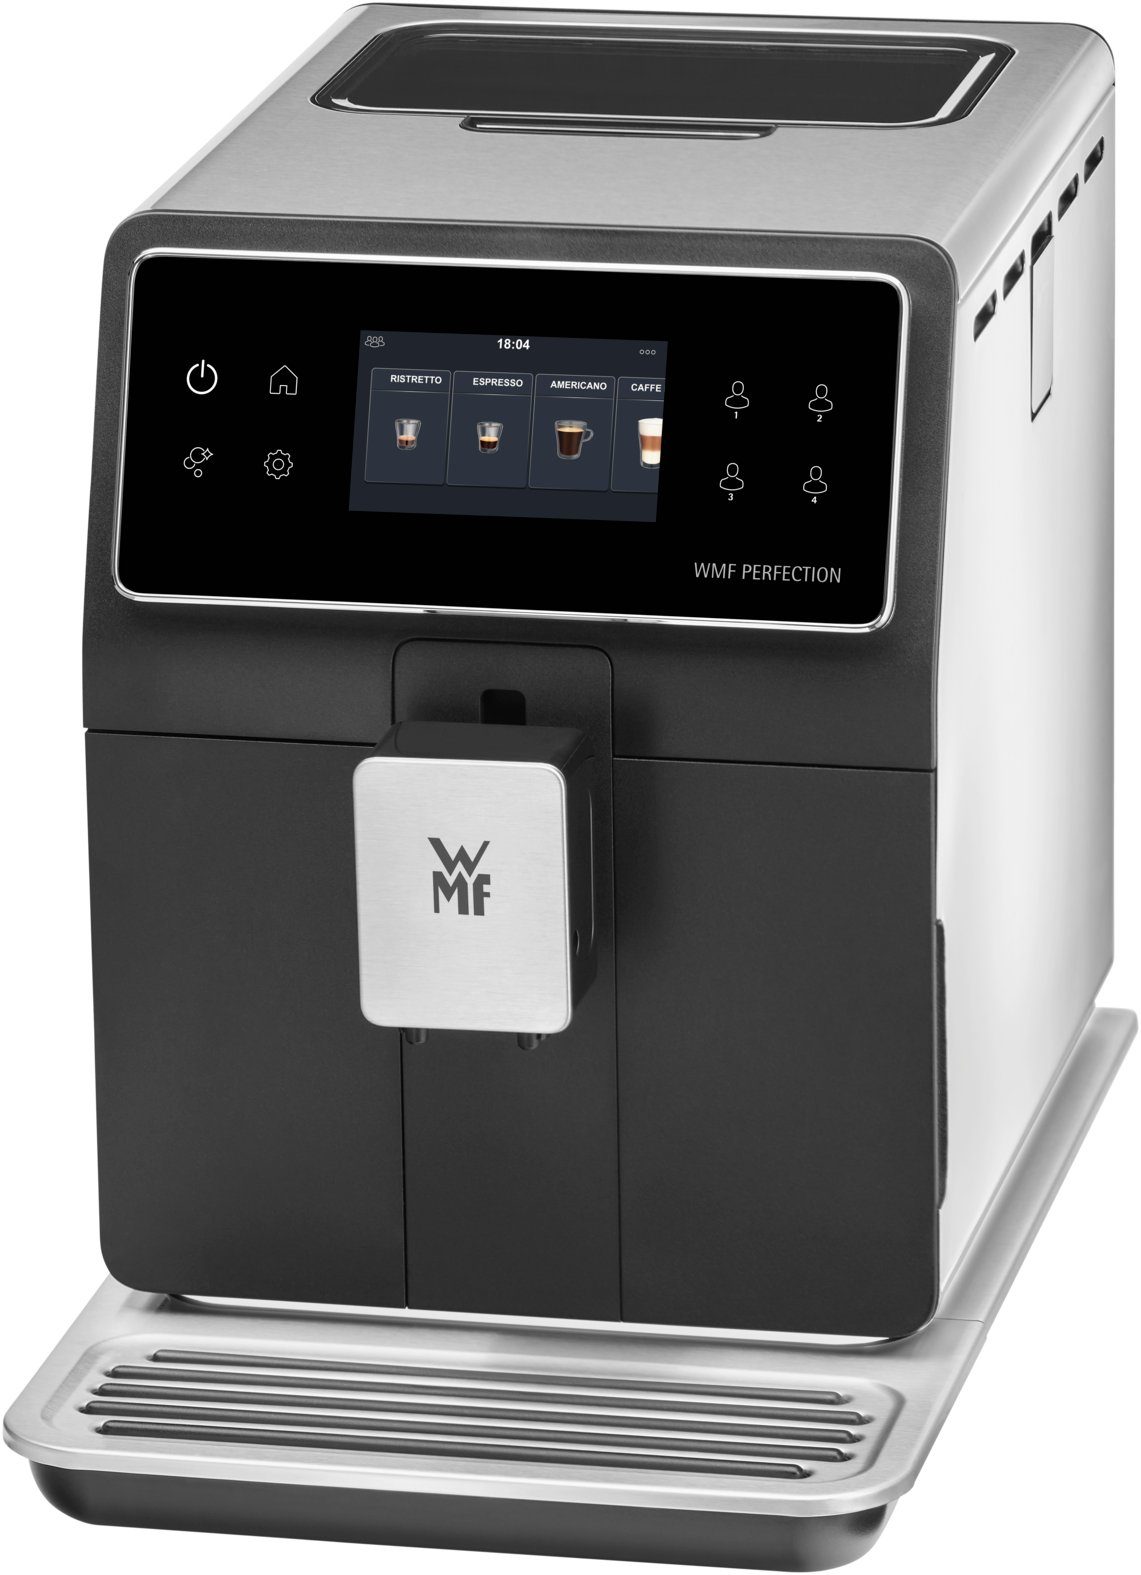 WMF Kaffeevollautomat Perfection 840L, mit Milchsystem,15  Getränkespezialitäten, Double Thermoblock, Edelstahl-Mahlwerk, Nutzerprofil  Speicherung online kaufen | OTTO